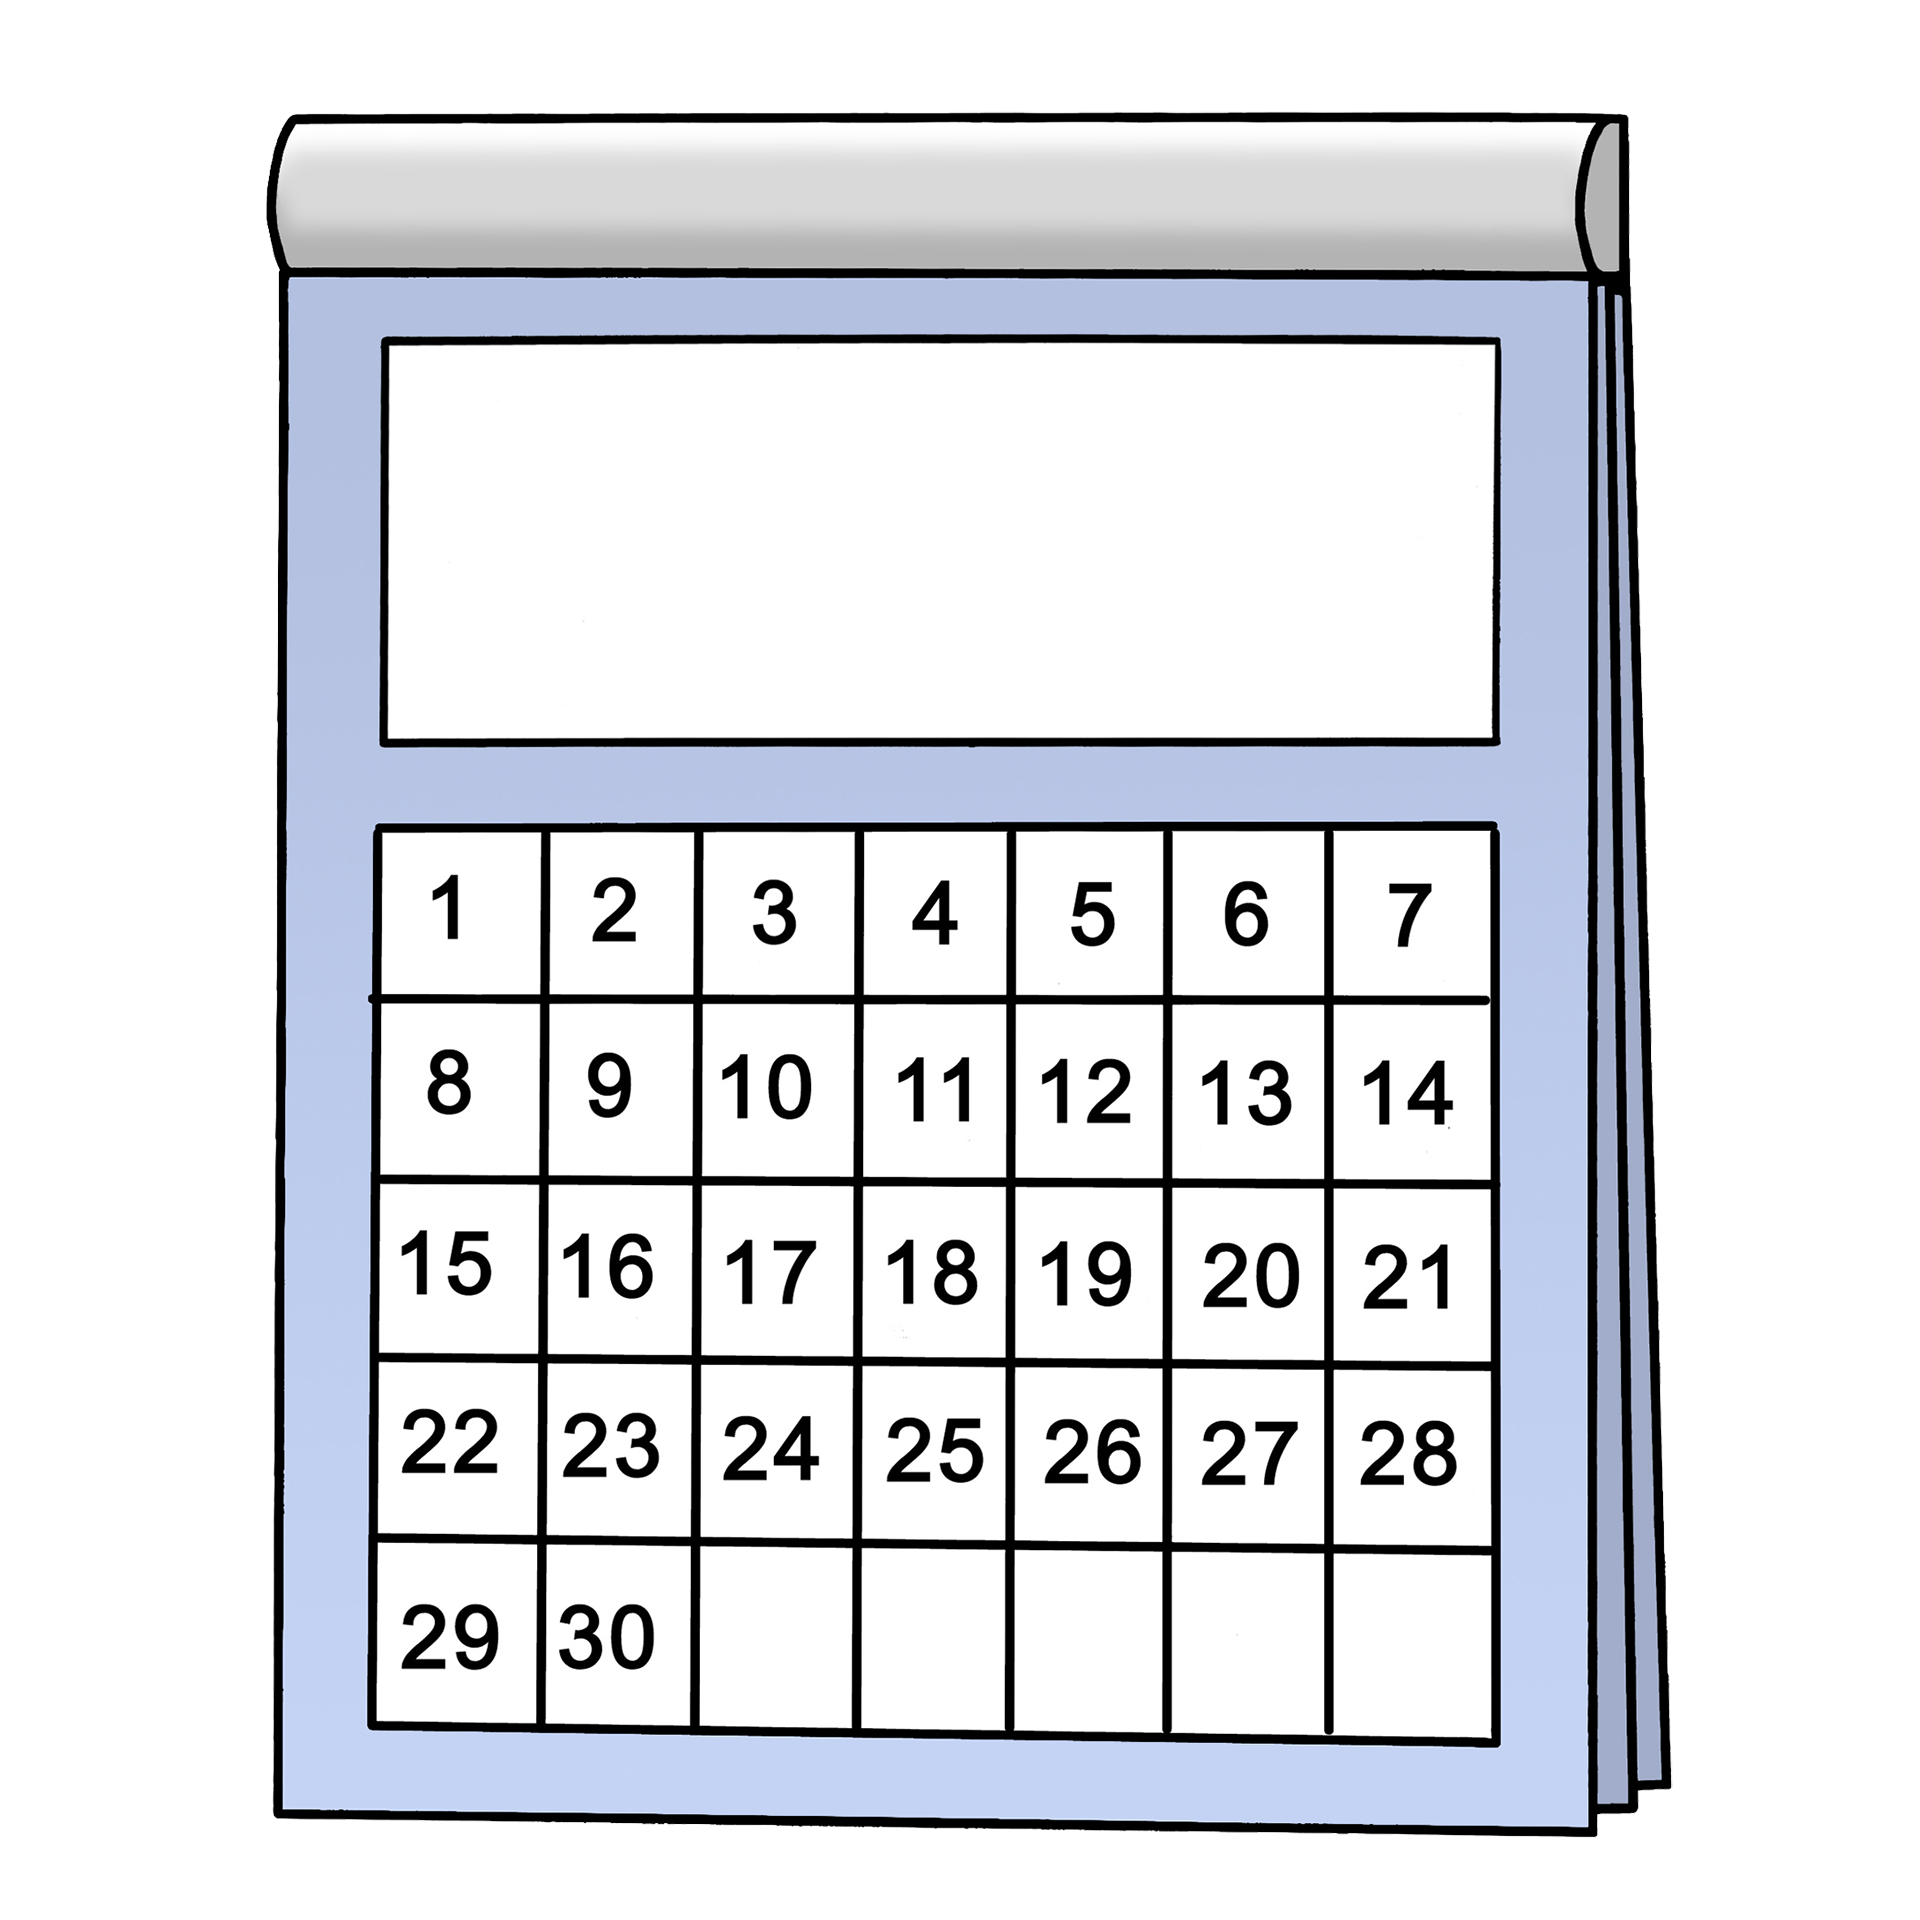 Bild zeigt einen Kalender mit 30 Tagen